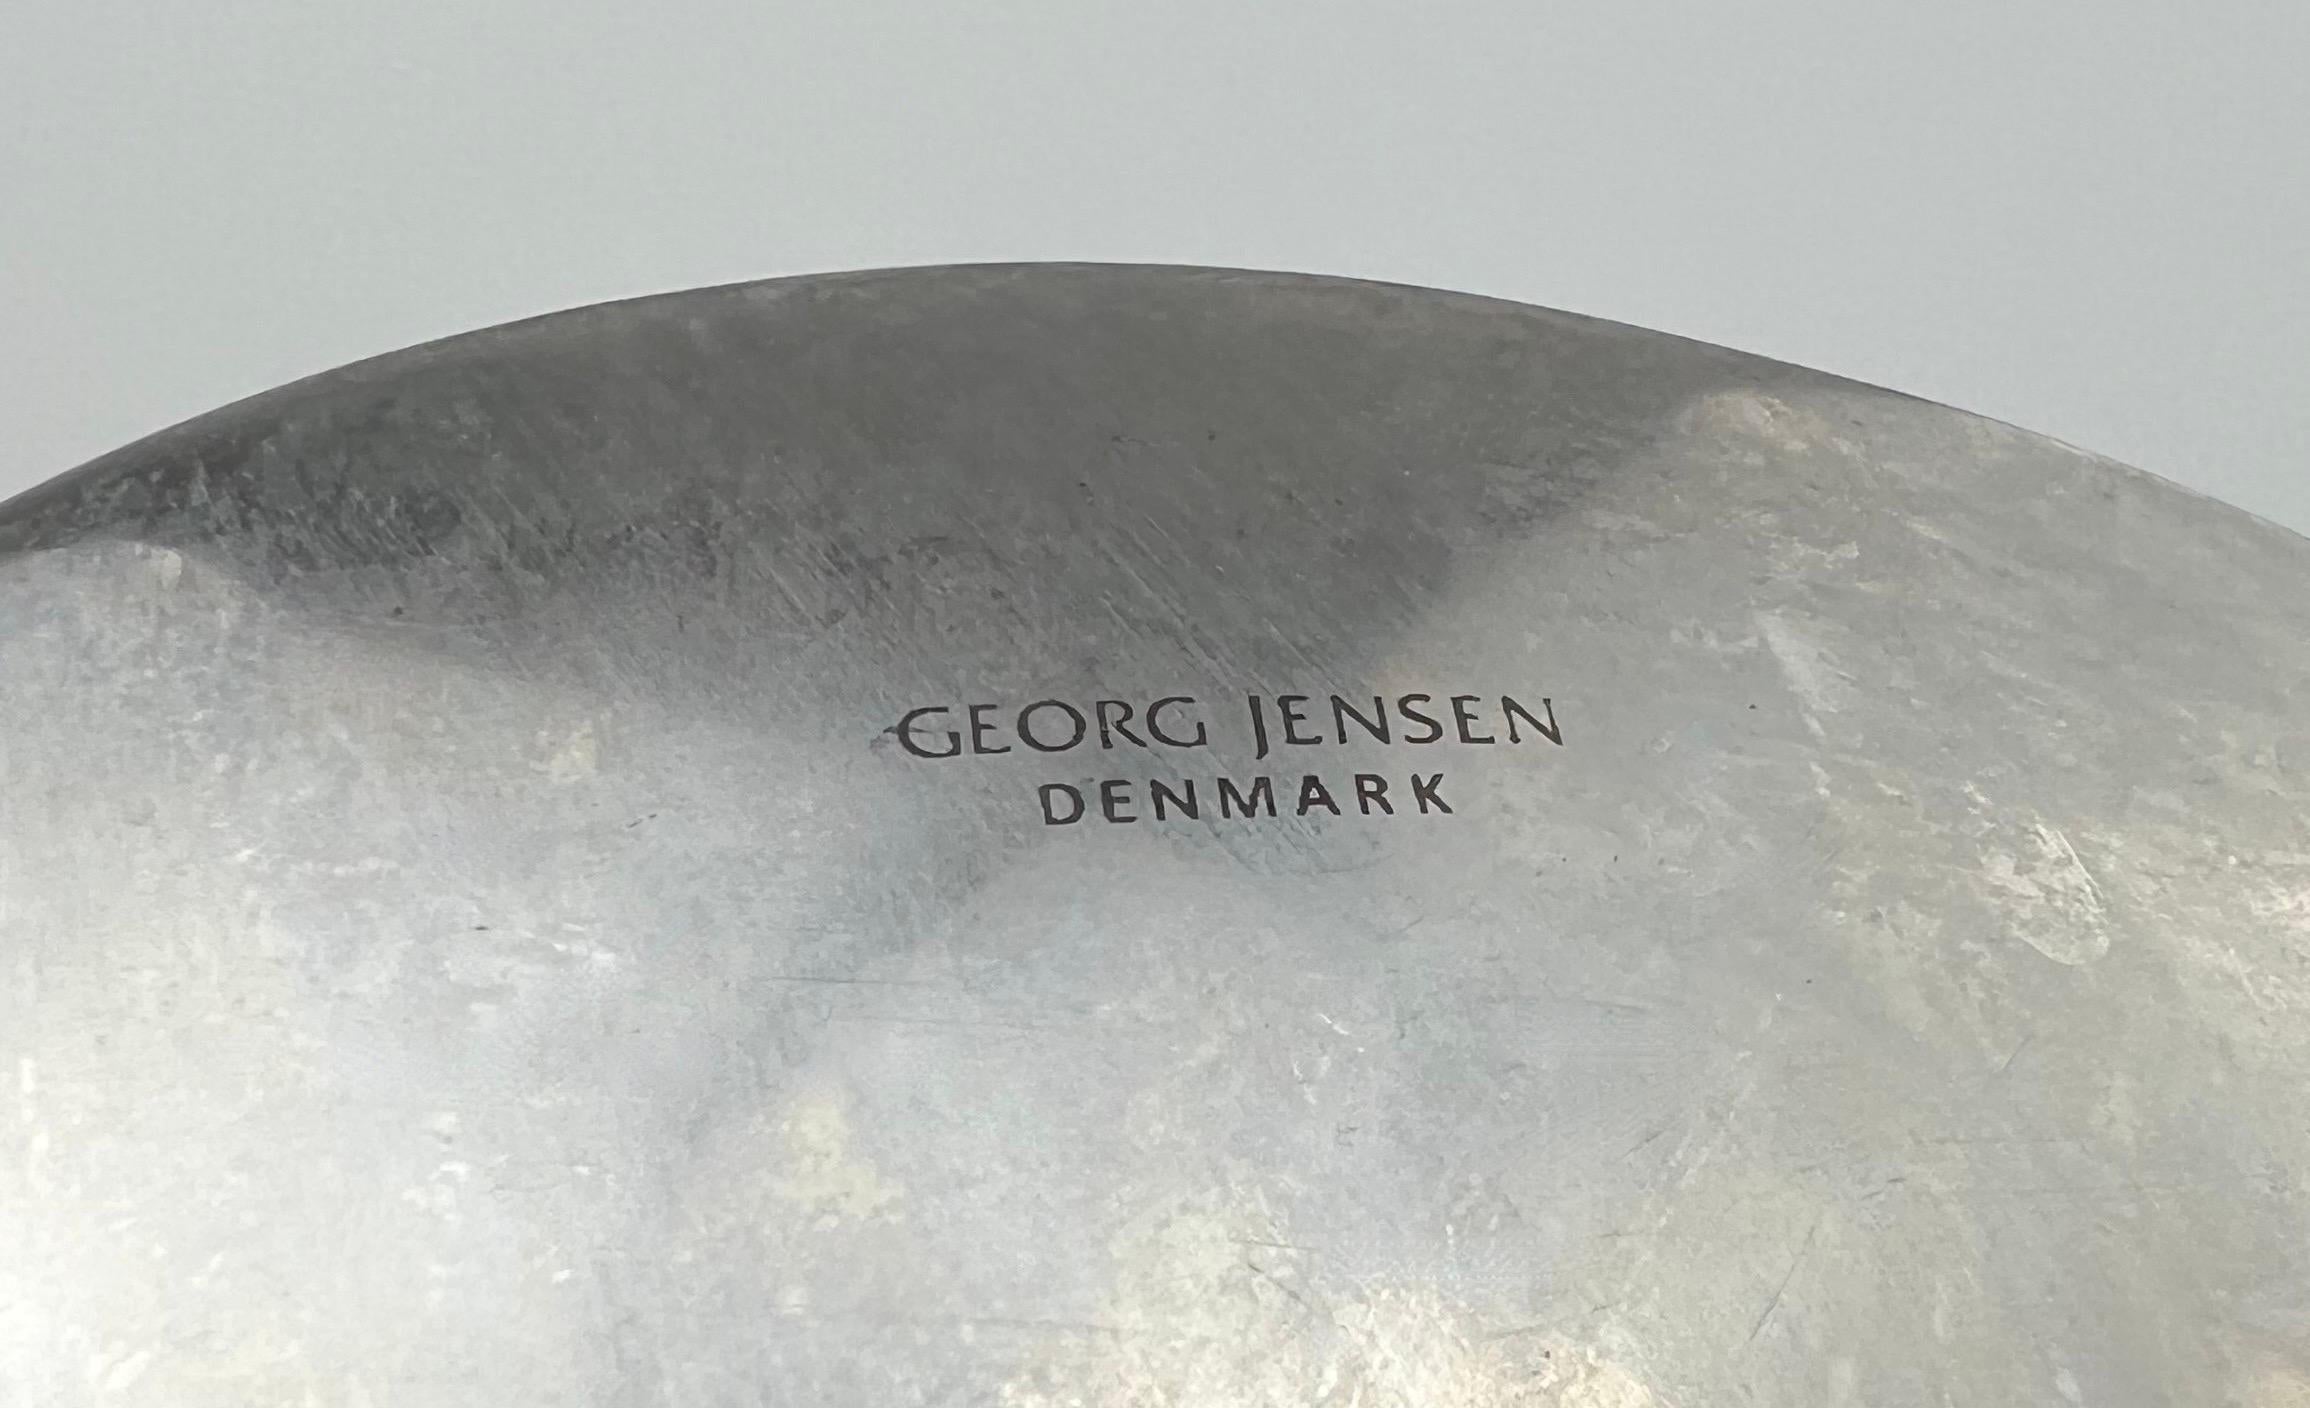 Stunning Georg Jensen Brushed Stainless Steel Bowl Denmark Scandinavian Modern In Good Condition For Sale In Draper, UT